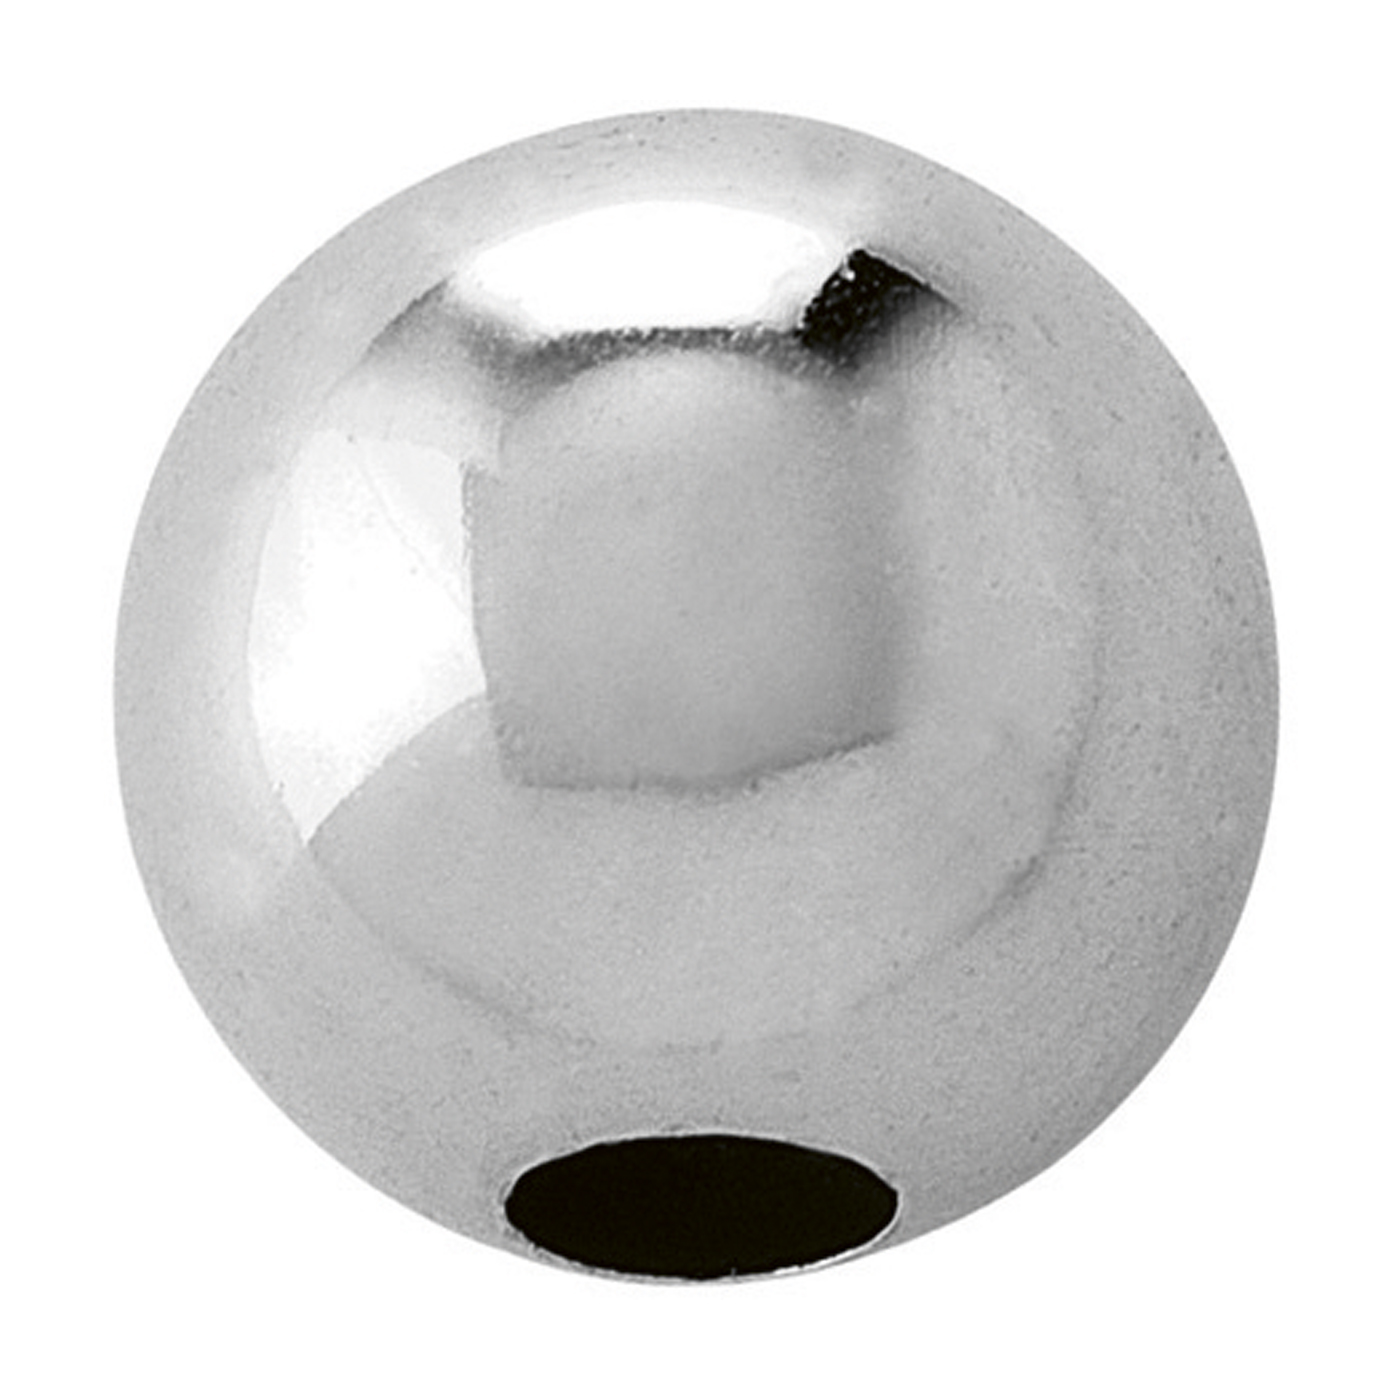 2-Hole Ball, 925Ag Polished, ø 9 mm - 1 piece